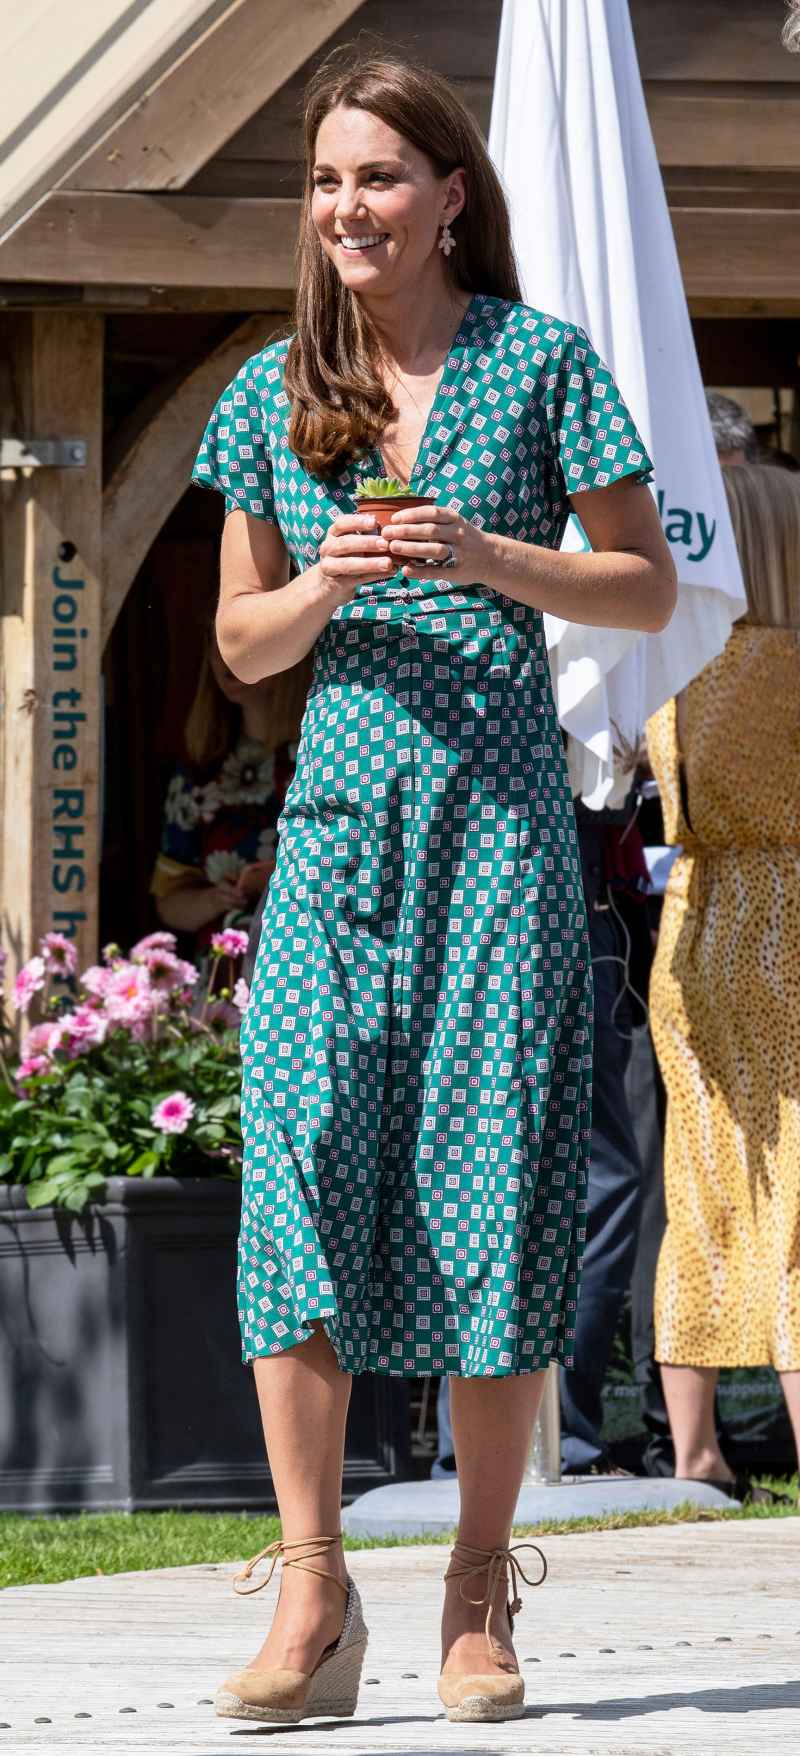 Kate Middleton Garden Party Dress July 1, 2019